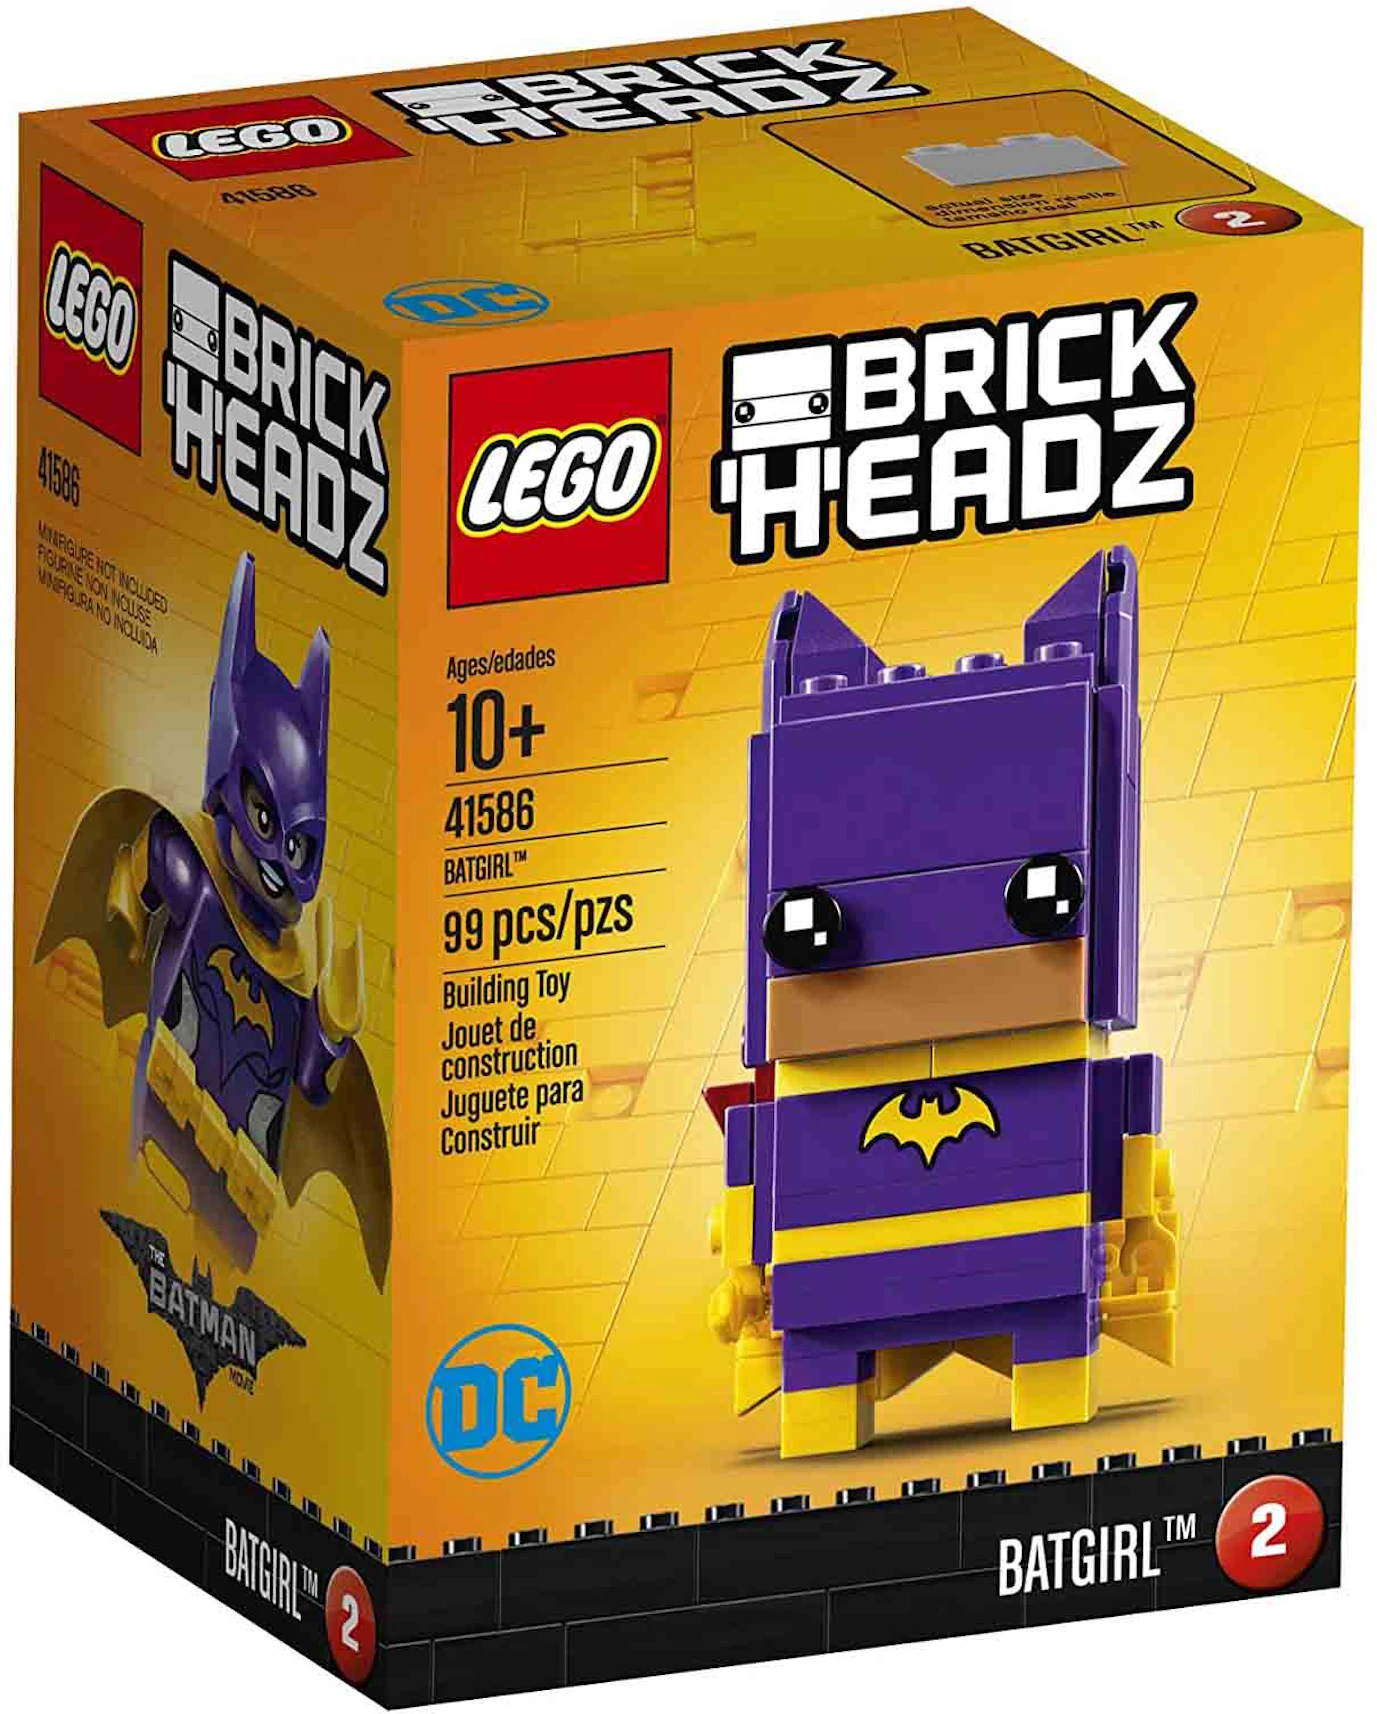 LEGO Brick Headz DC Comics Batgirl Set 41586 - US